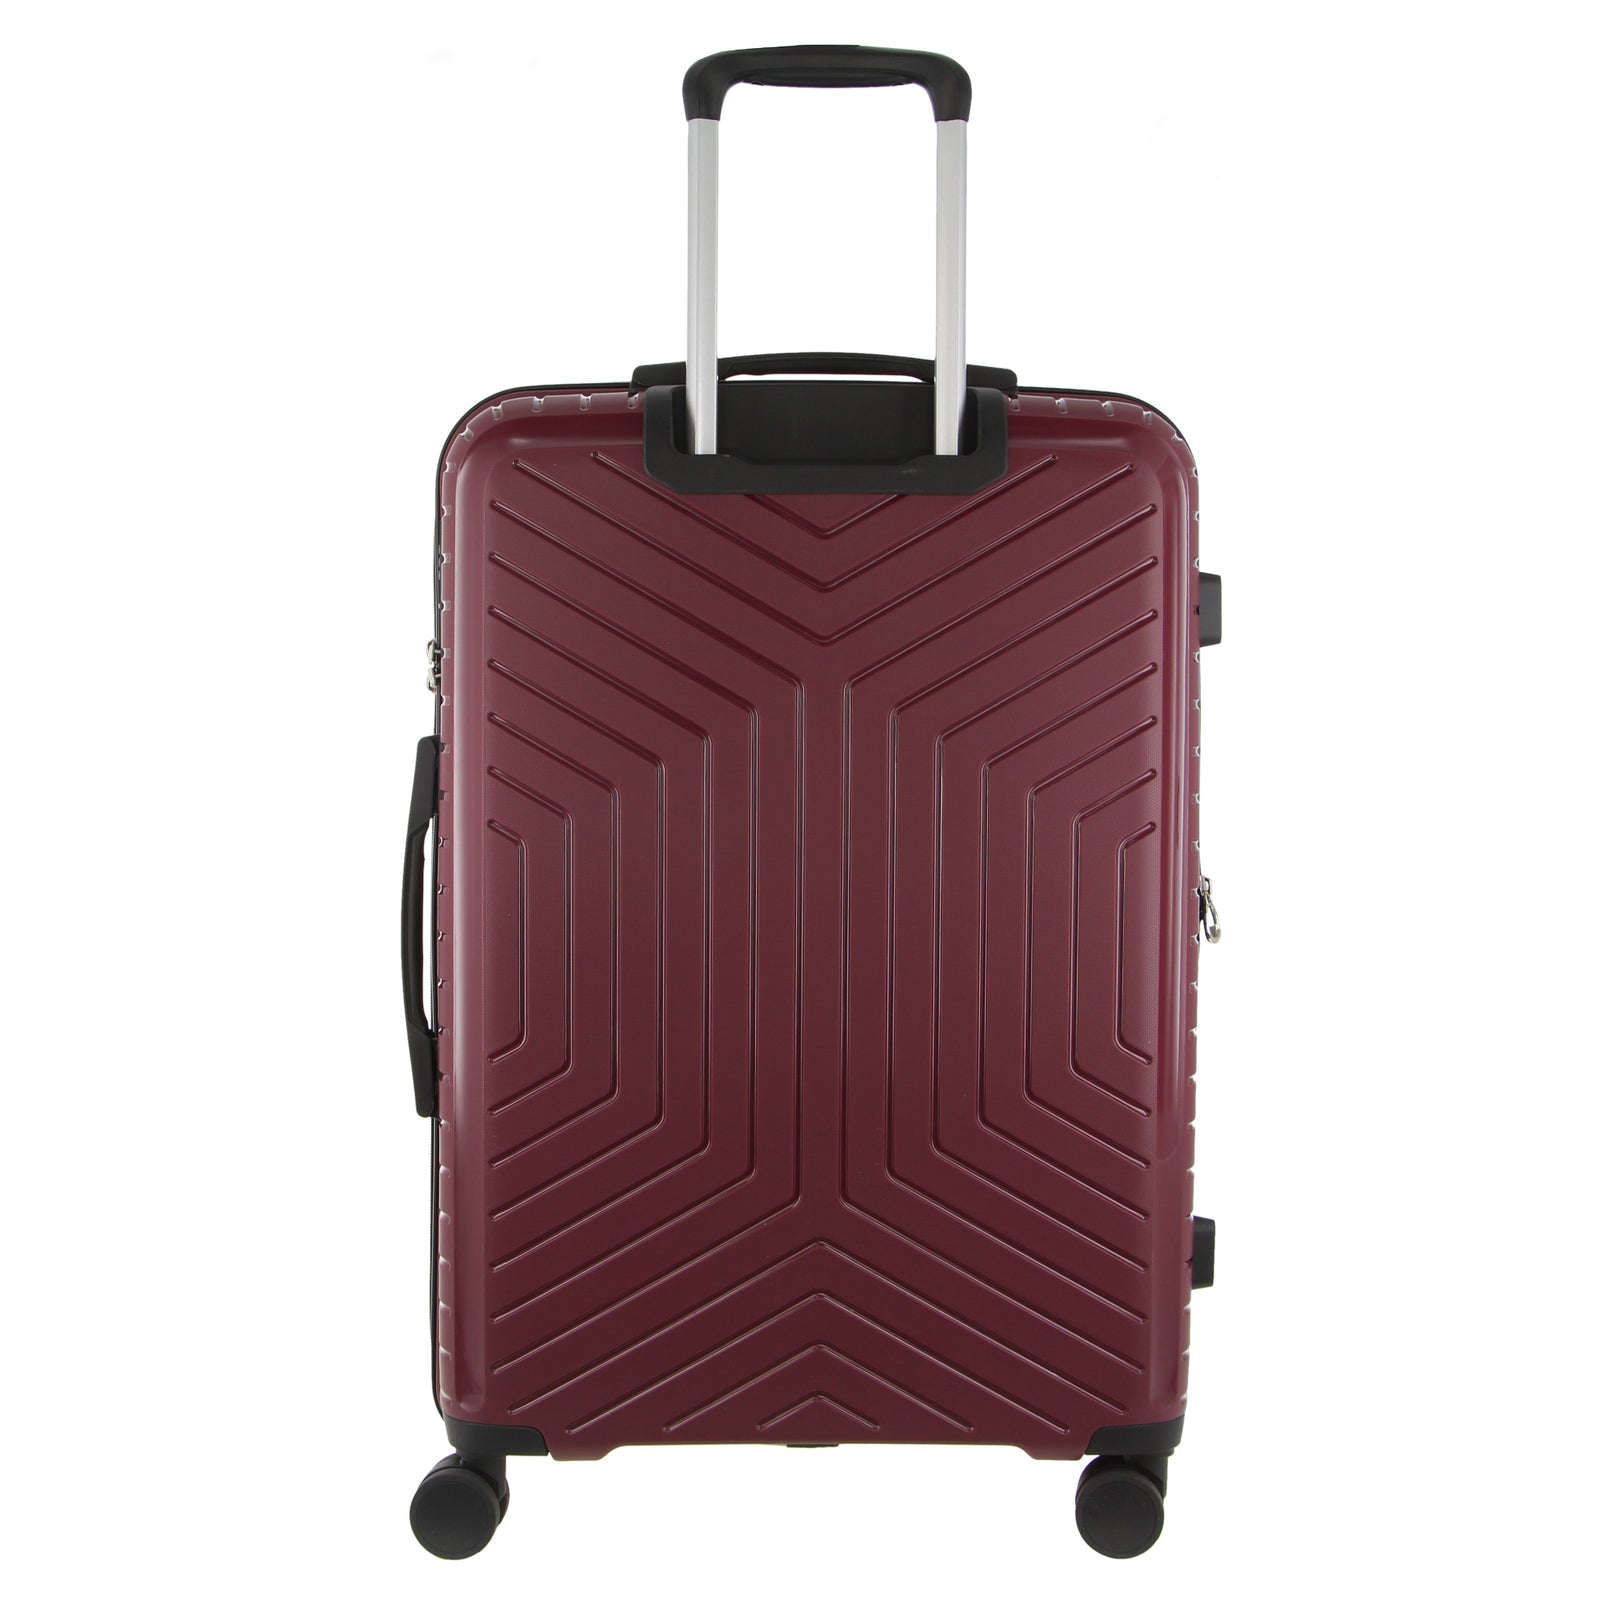 65cm Medium Hard-Shell Suitcase Travel Luggage Bag - Burgundy